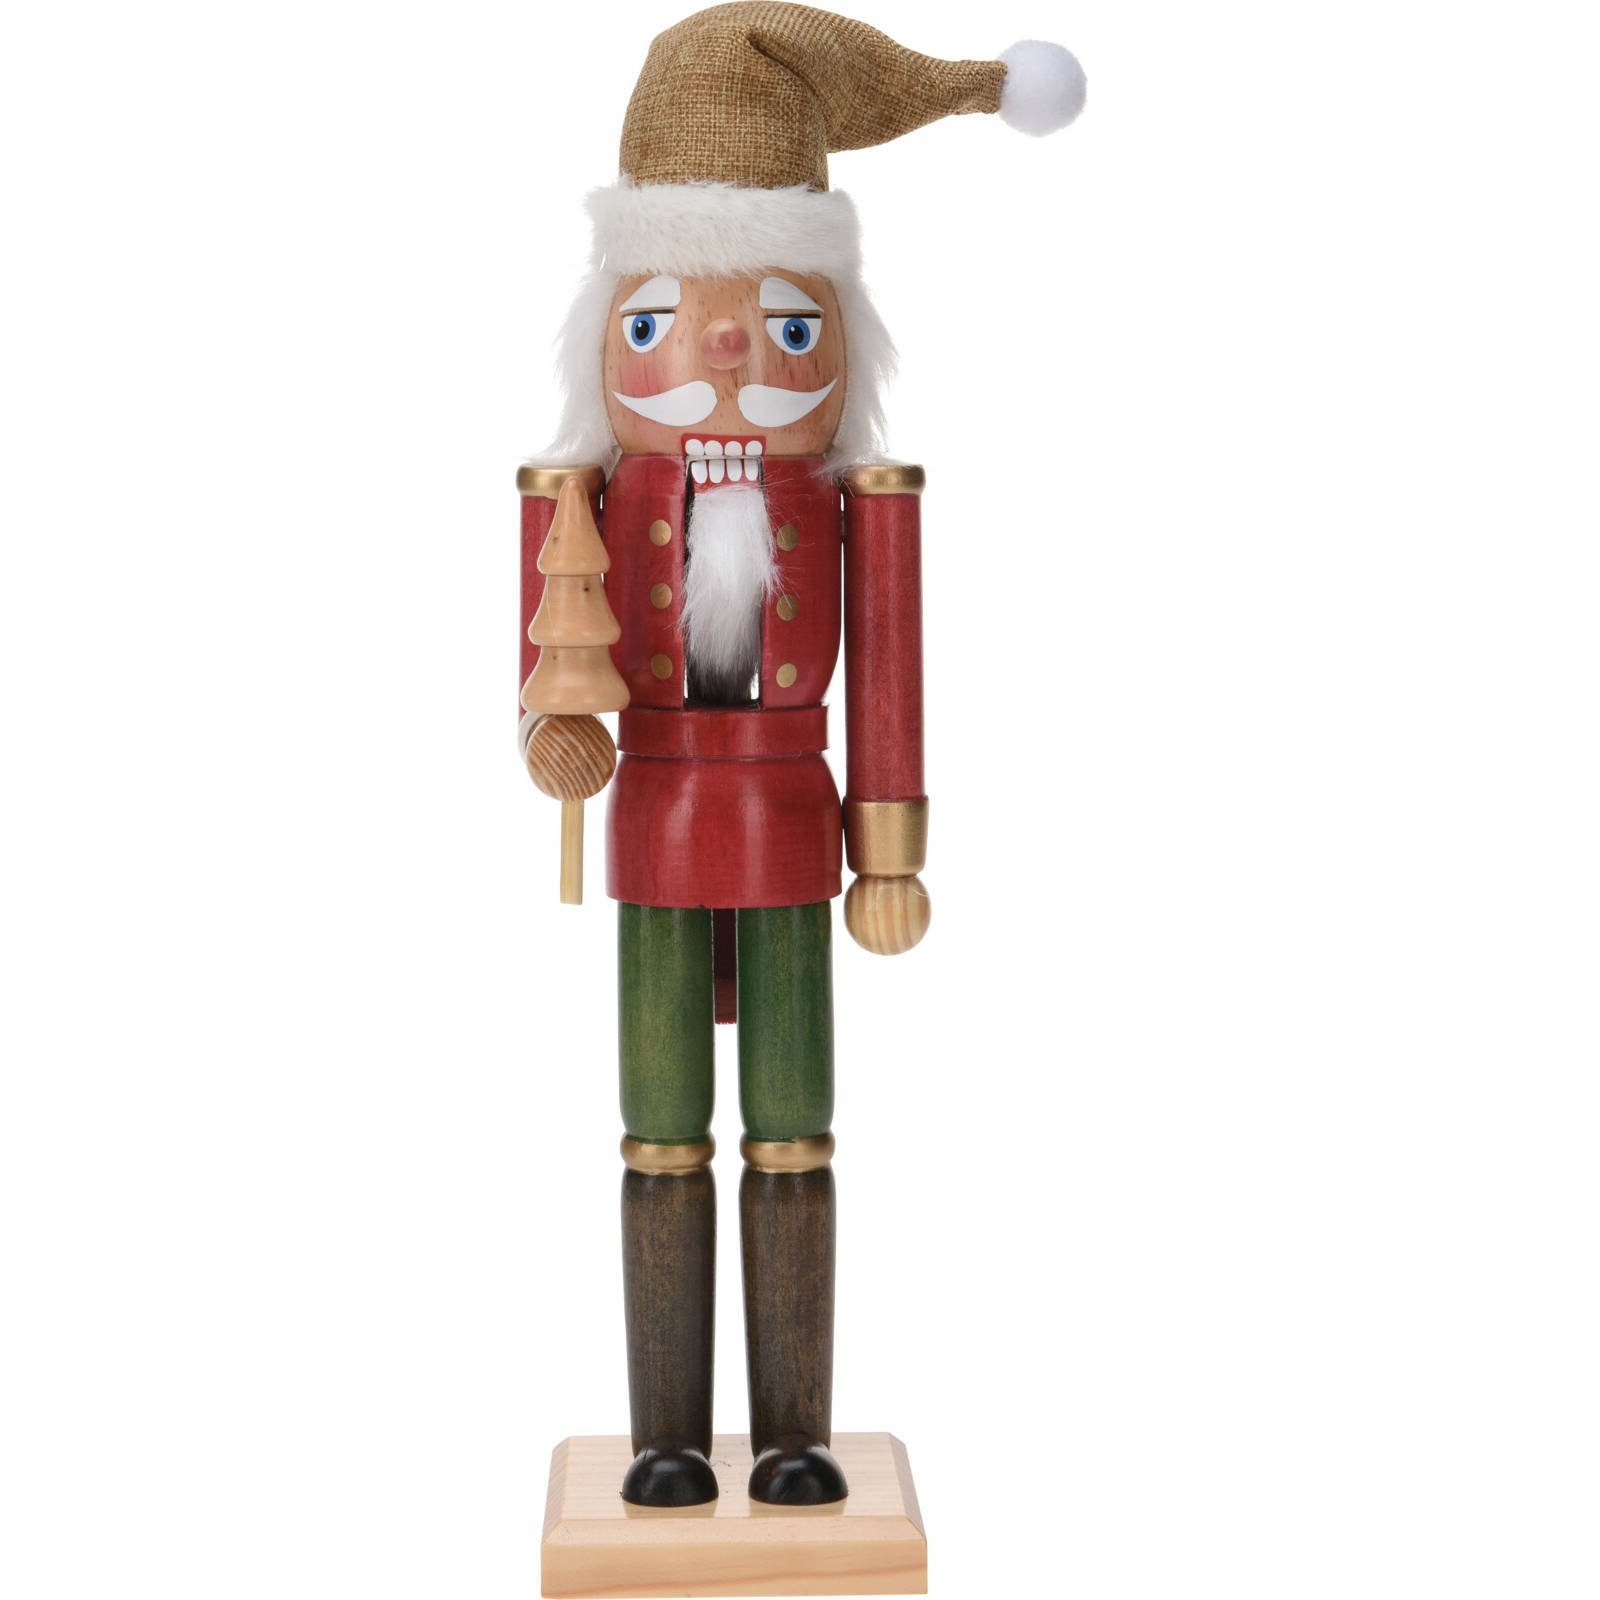 Weihnachtsbaum & collection mit Nussknacker styling Weihnachtsfigur Home